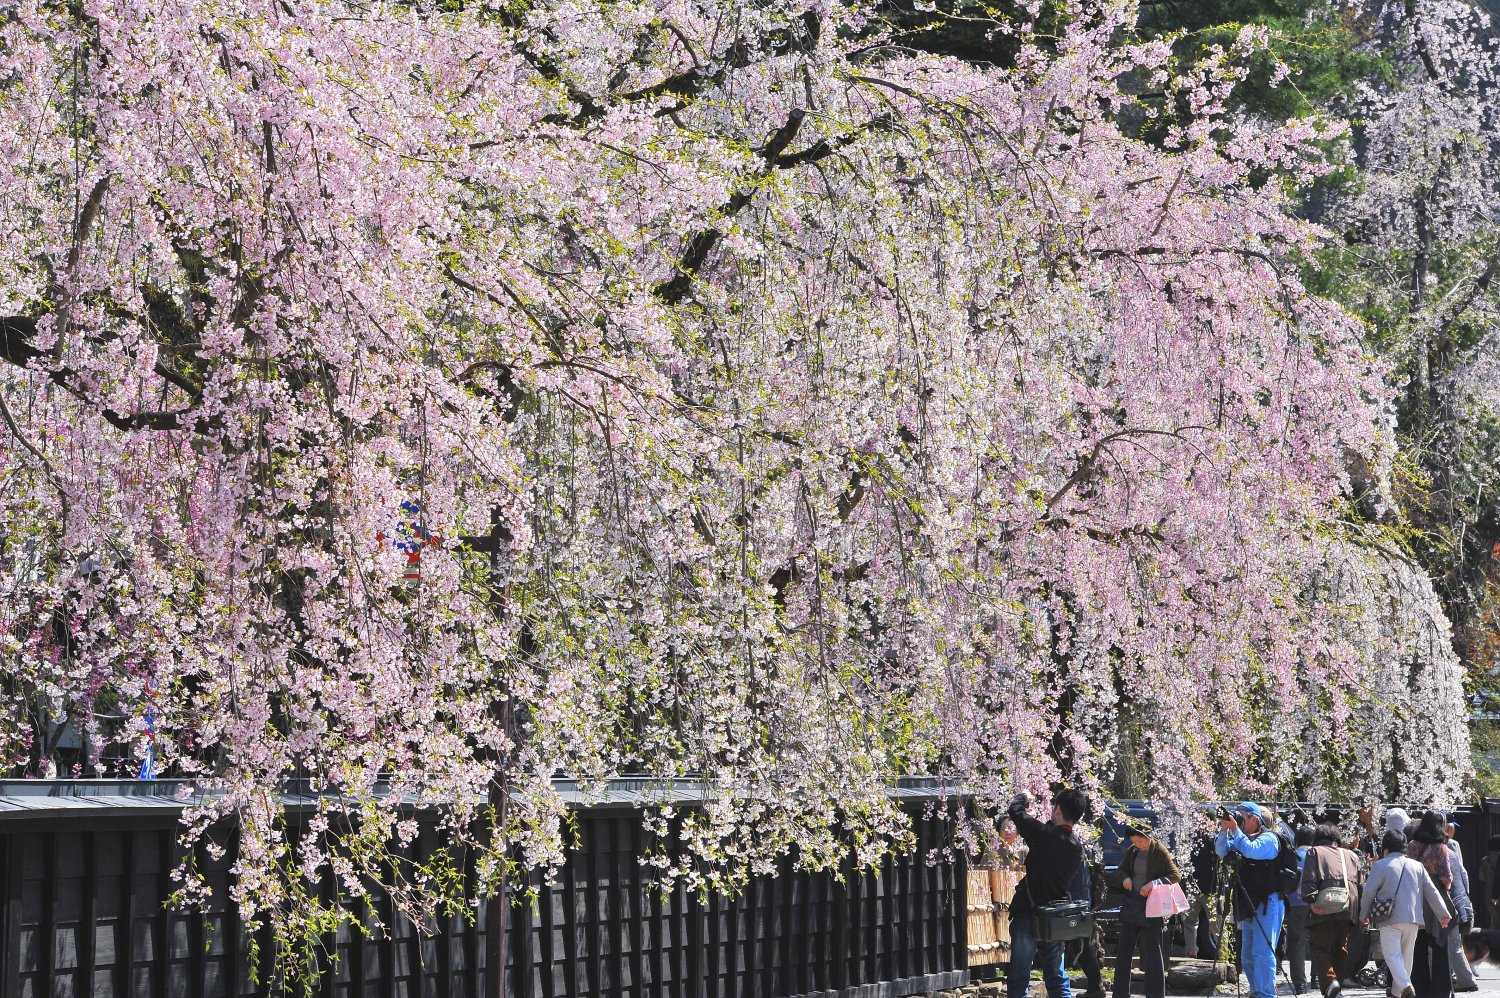 桜の名所としても名高い。風光明媚なしだれ桜と屋敷のコントラストを楽しんで。